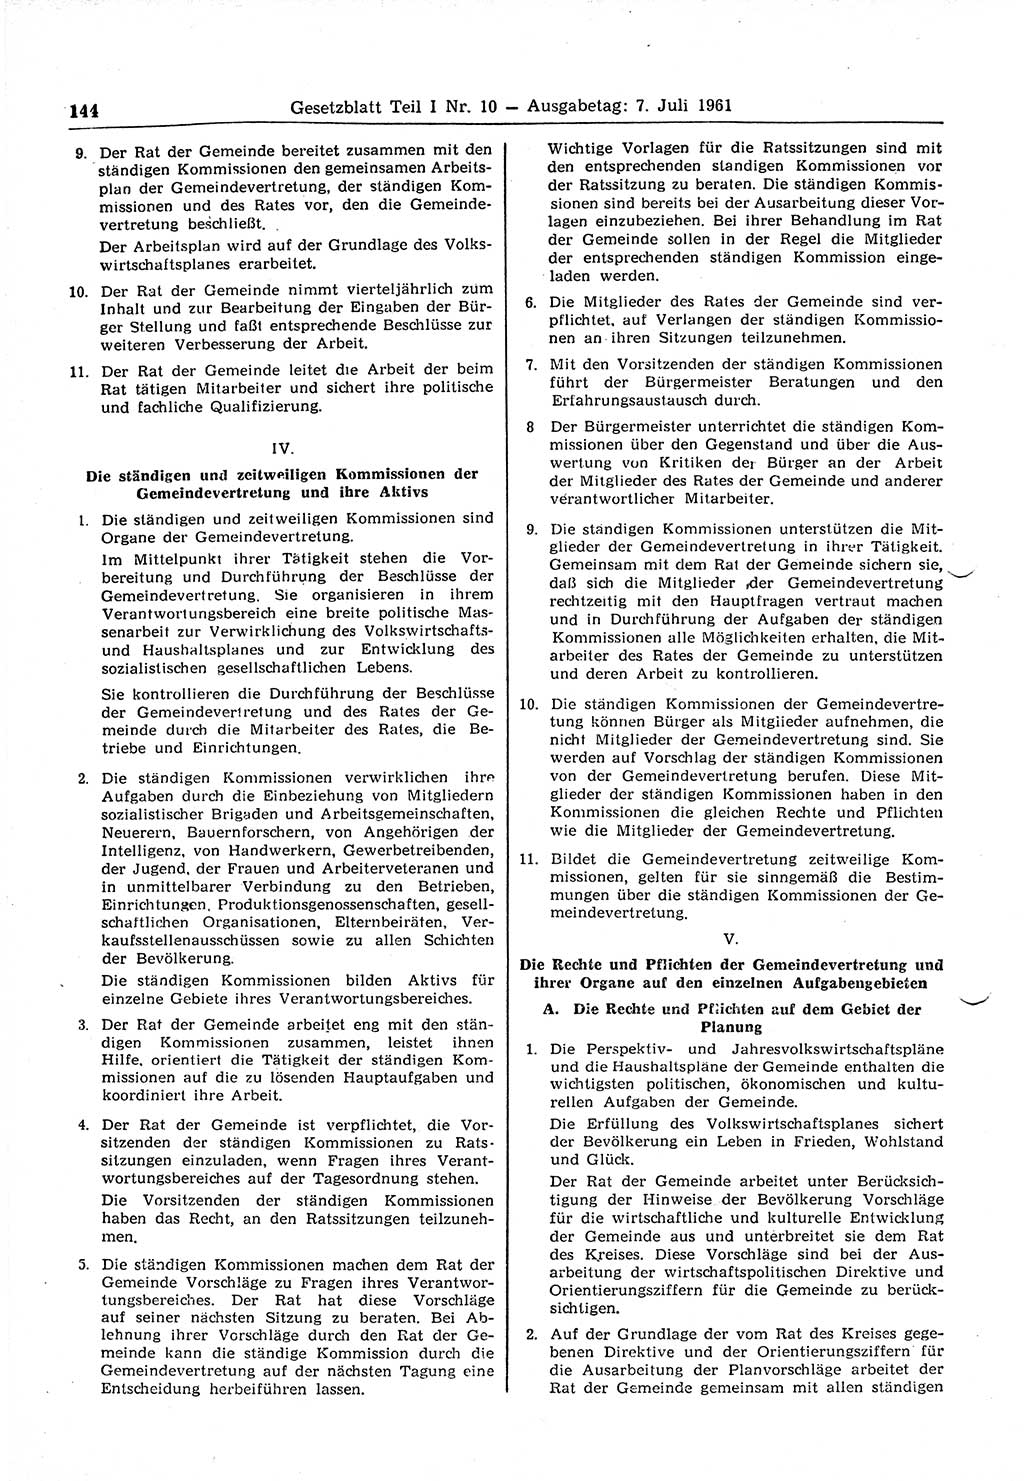 Gesetzblatt (GBl.) der Deutschen Demokratischen Republik (DDR) Teil Ⅰ 1961, Seite 144 (GBl. DDR Ⅰ 1961, S. 144)